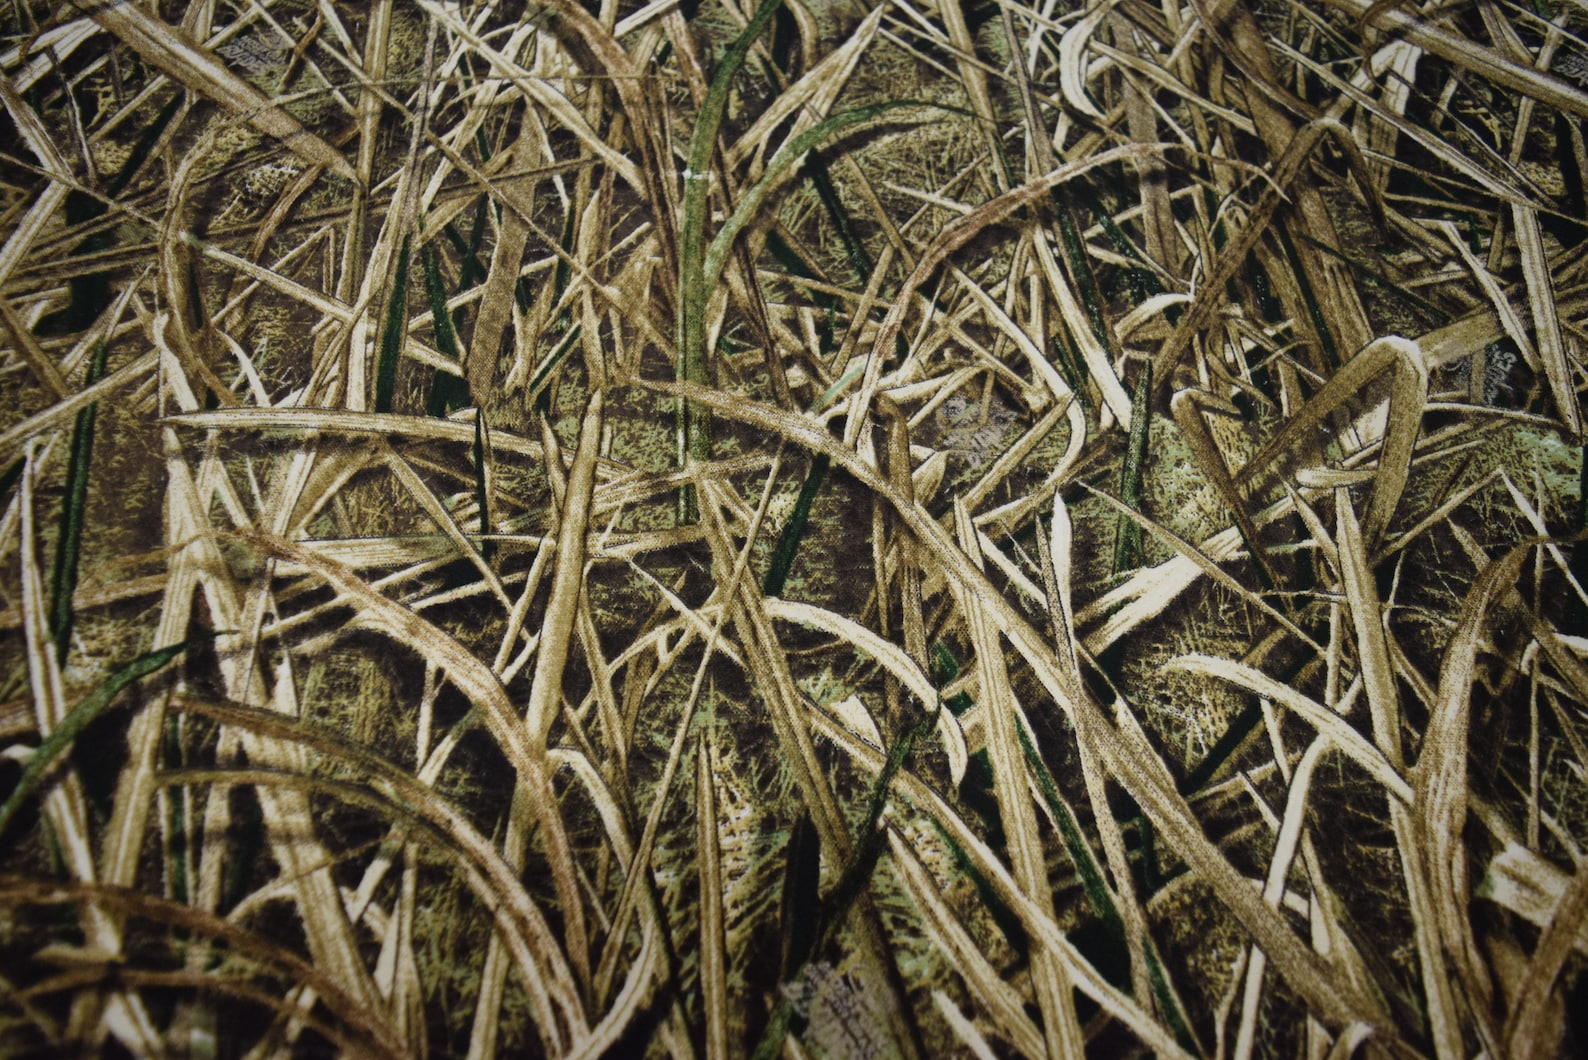 Mossy Oak Shadow Grass Blades 13 oz Cotton duck fabric heavy | Etsy